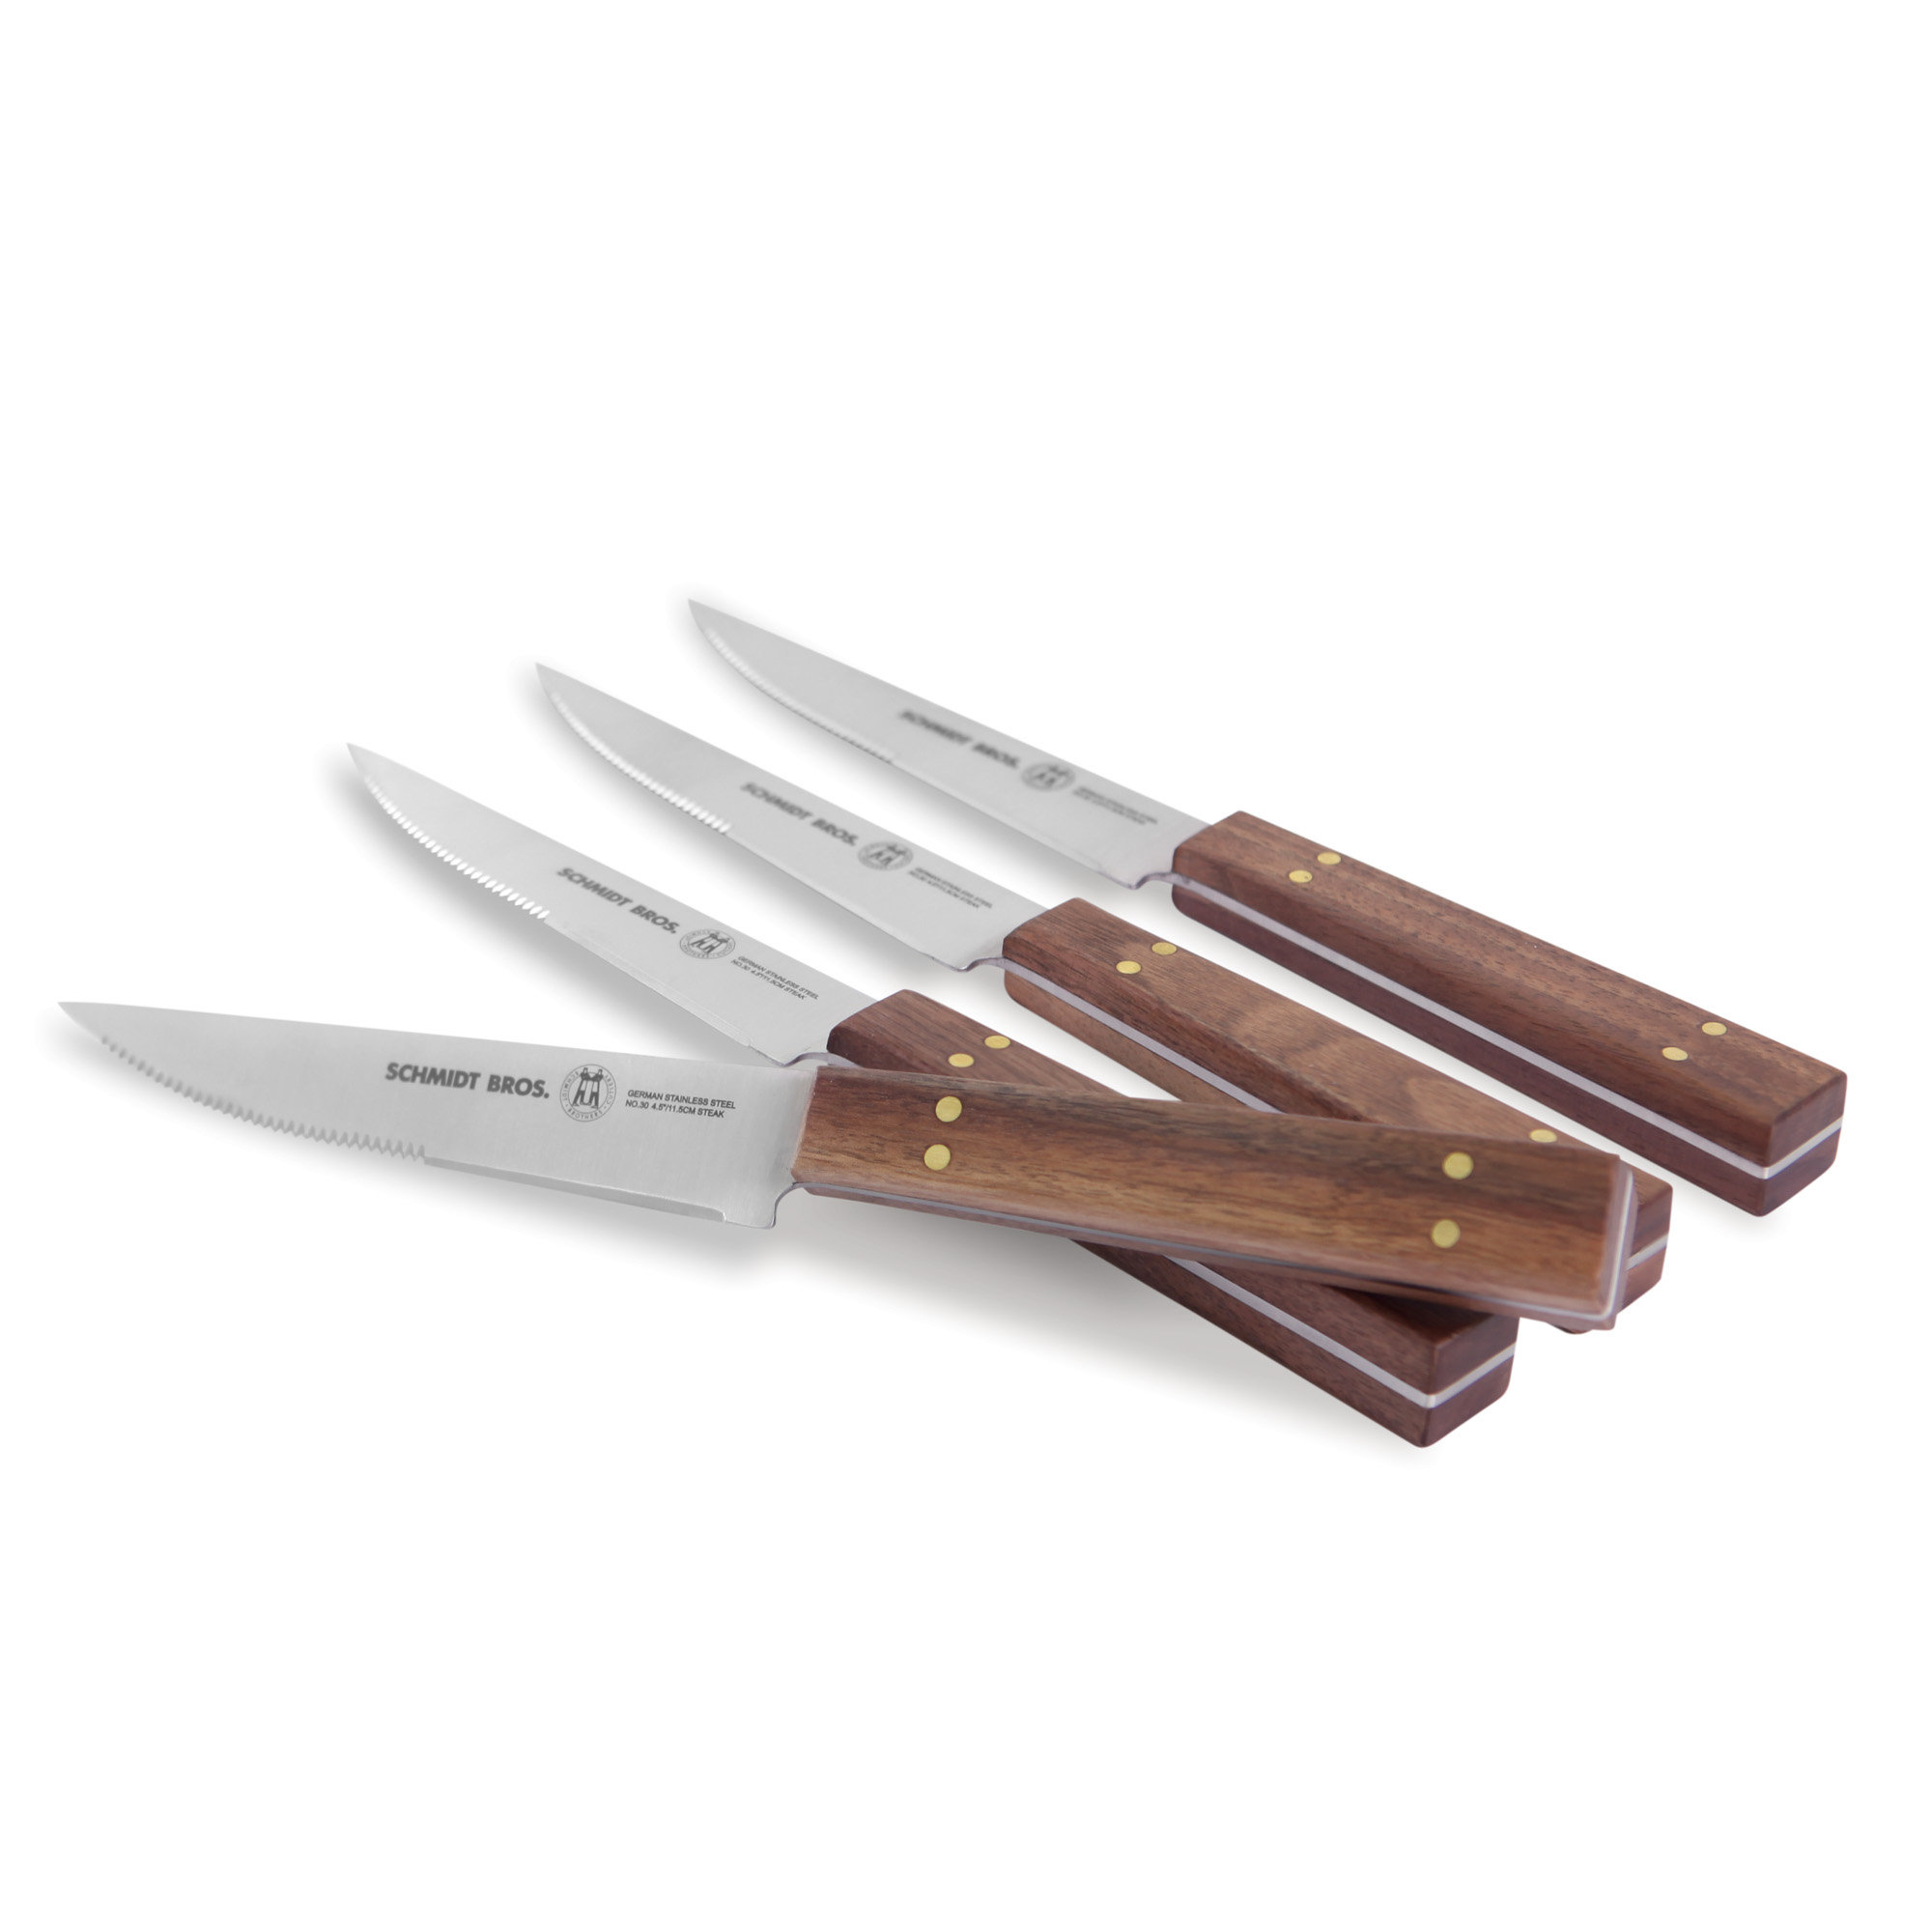 https://assets.wfcdn.com/im/53159279/compr-r85/2565/256598176/schmidt-brothers-cutlery-walnut-brass-4-piece-steak-knife-set.jpg